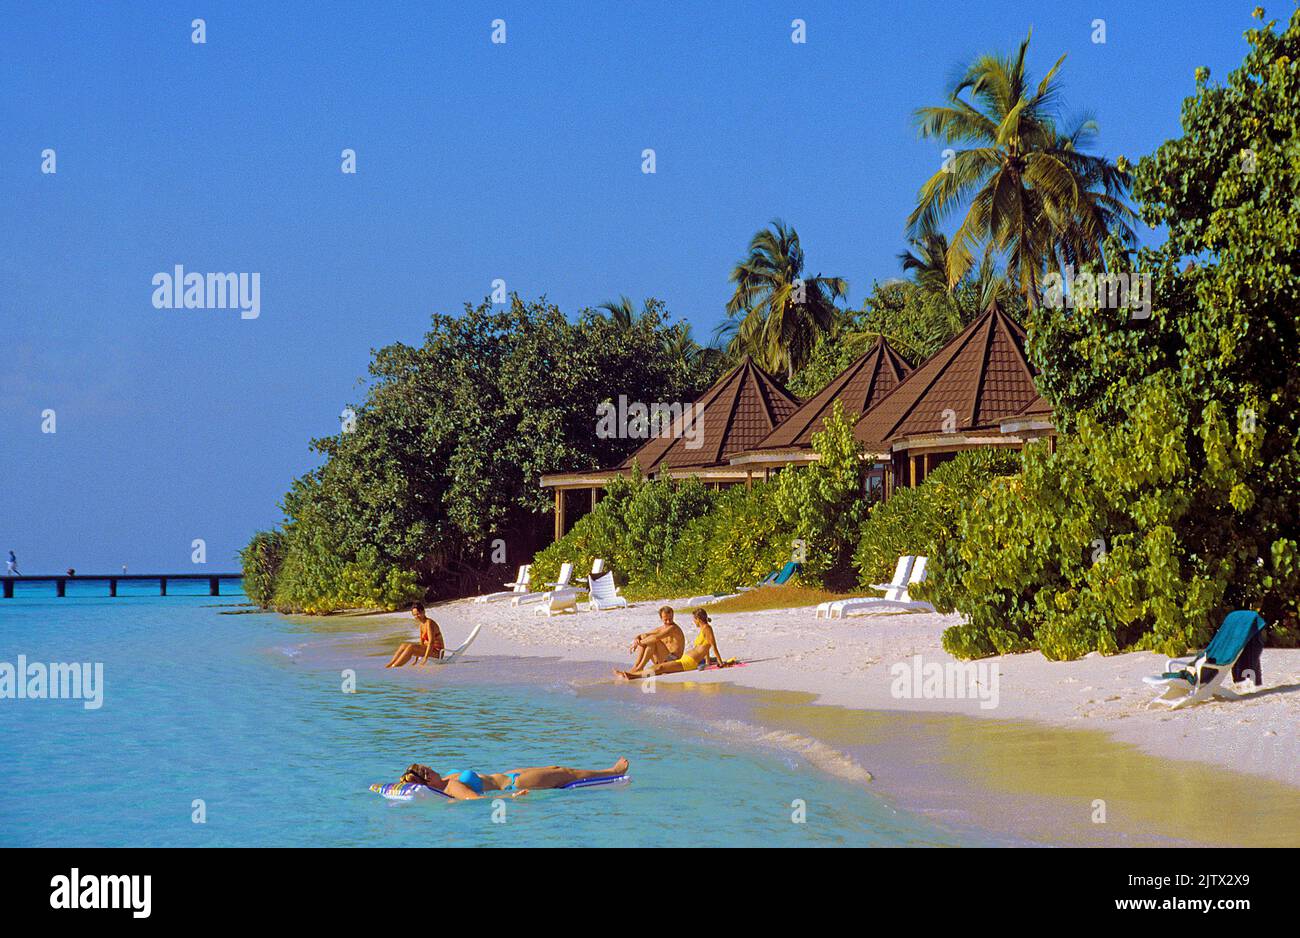 Strandleben auf der maledivischen Insel Komandhoo, ein Ferienort auf dem Laviyani Atoll, Malediven, Indischer Ozean, Asien Stockfoto